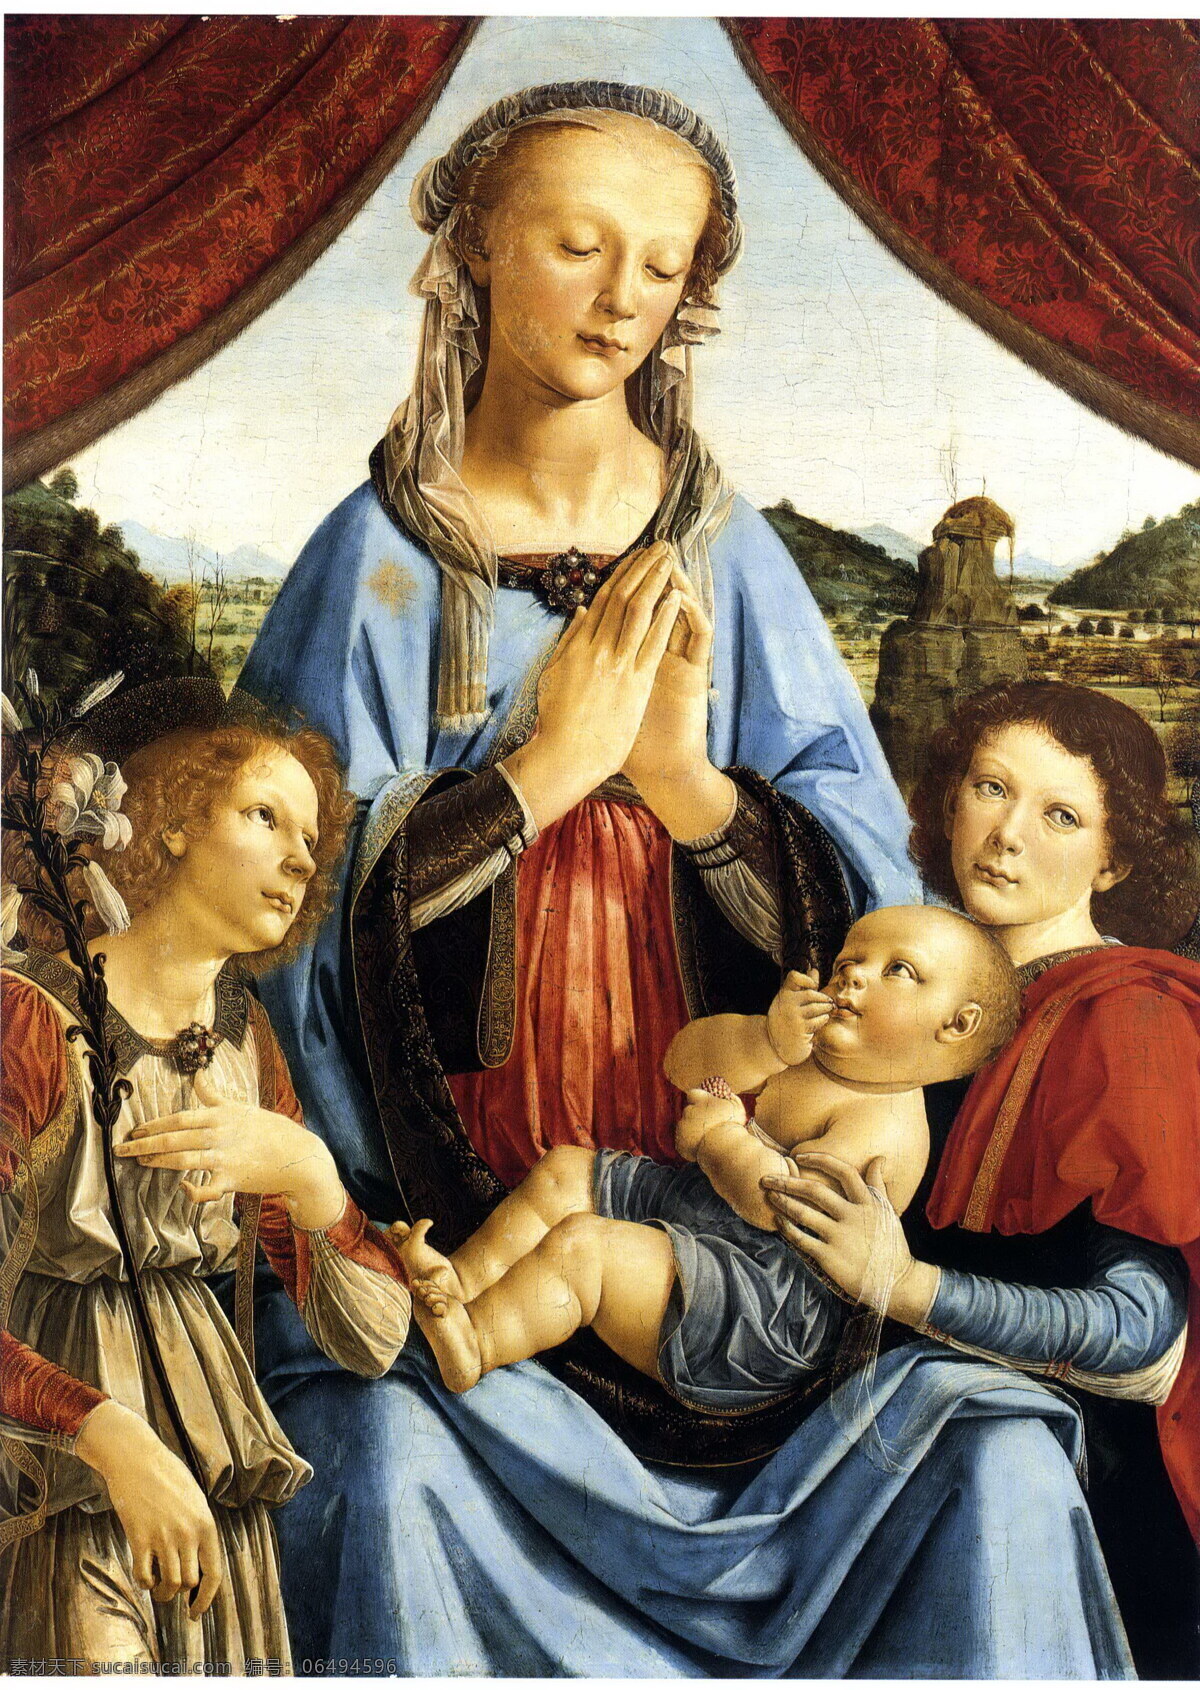 圣母 玛丽亚 油画 油画写生 人物油画 圣母玛丽亚 耶稣 人物写生 人物肖像画 绘画艺术 装饰画 书画文字 文化艺术